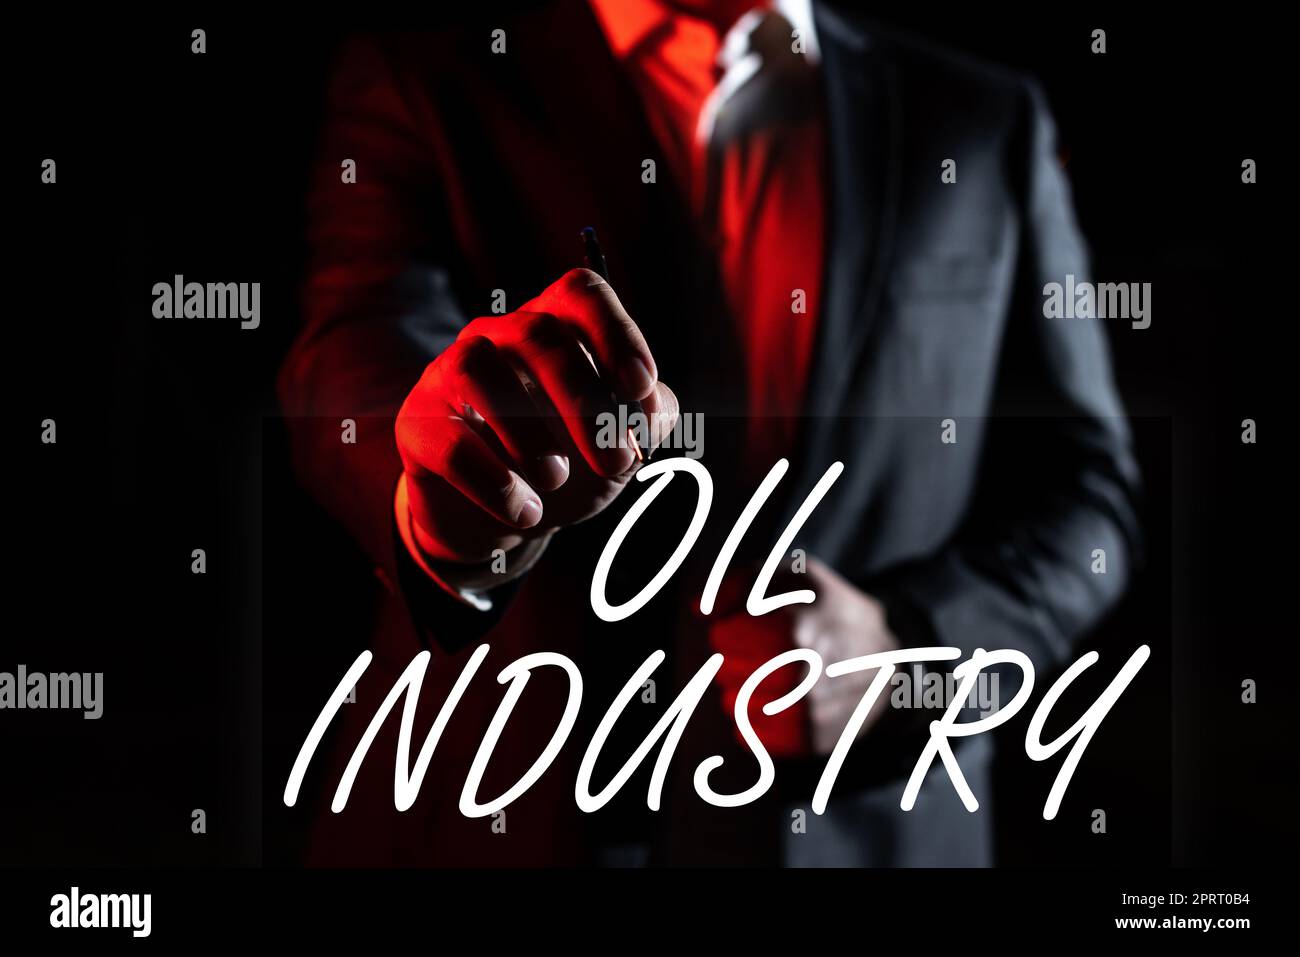 Affiche textuelle indiquant l'industrie pétrolière. Concept Internet exploration extraction raffinage commercialisation des produits pétroliers Banque D'Images